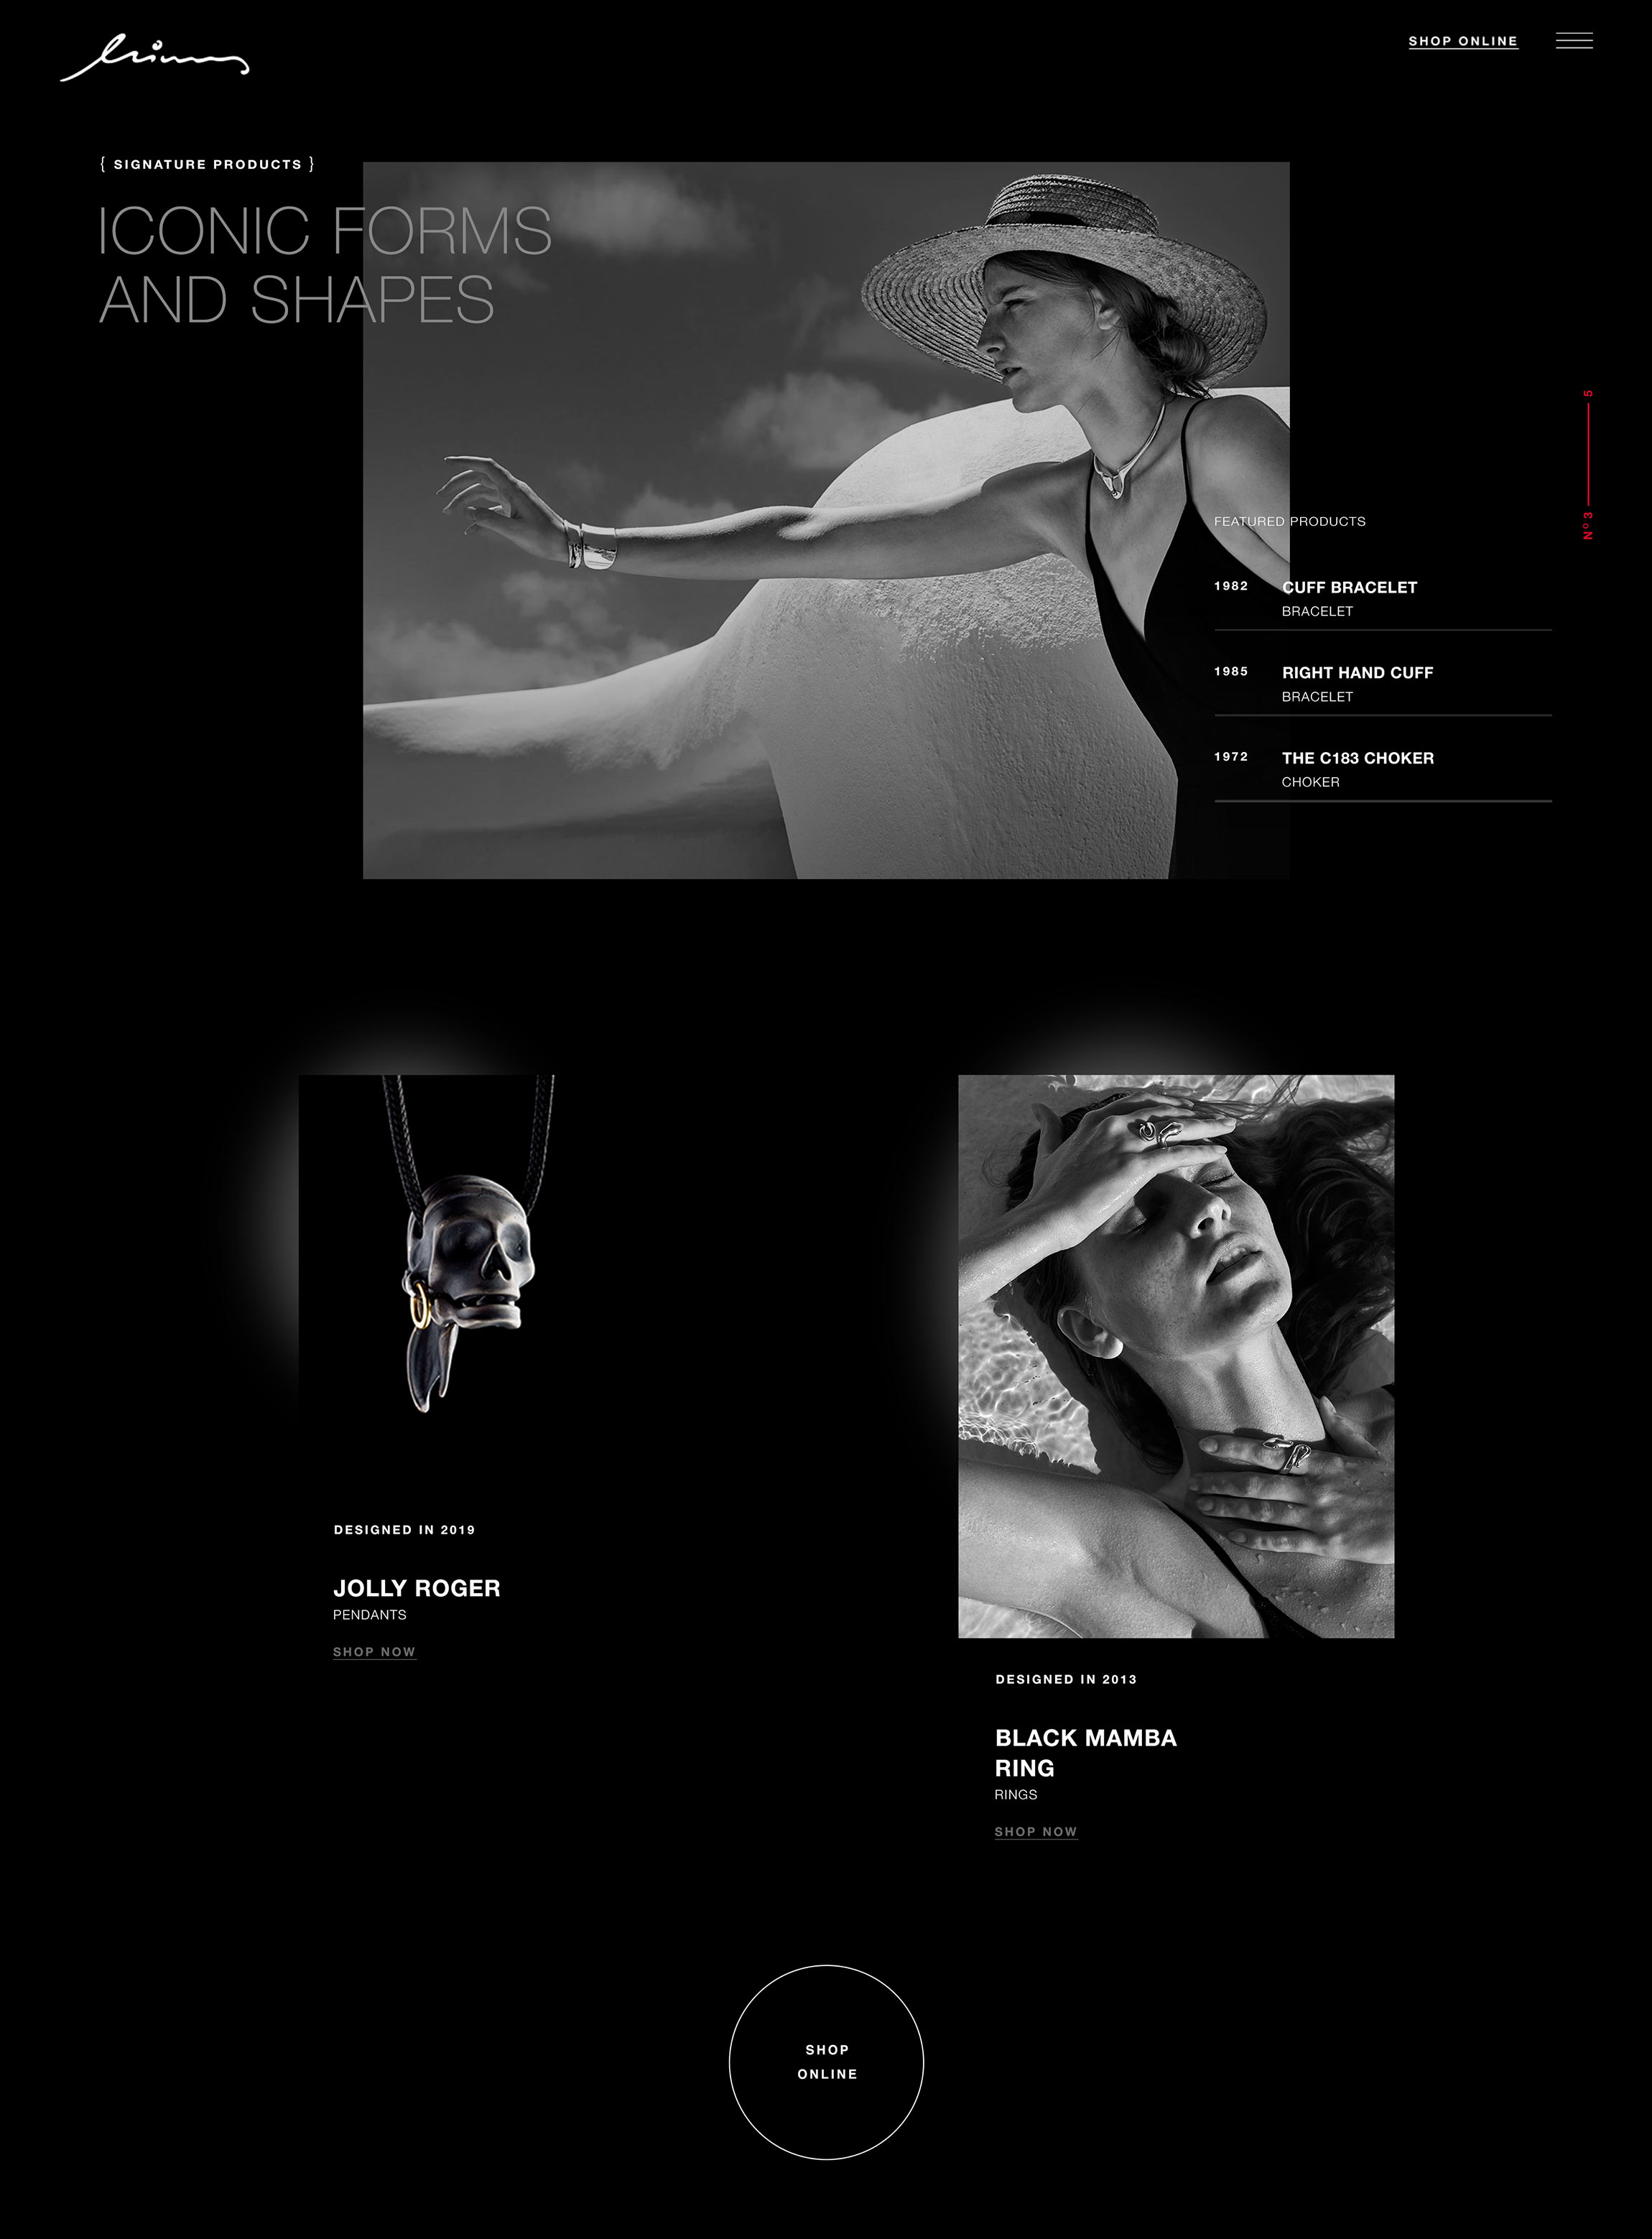 minas website design corporate shop online kommigraphics